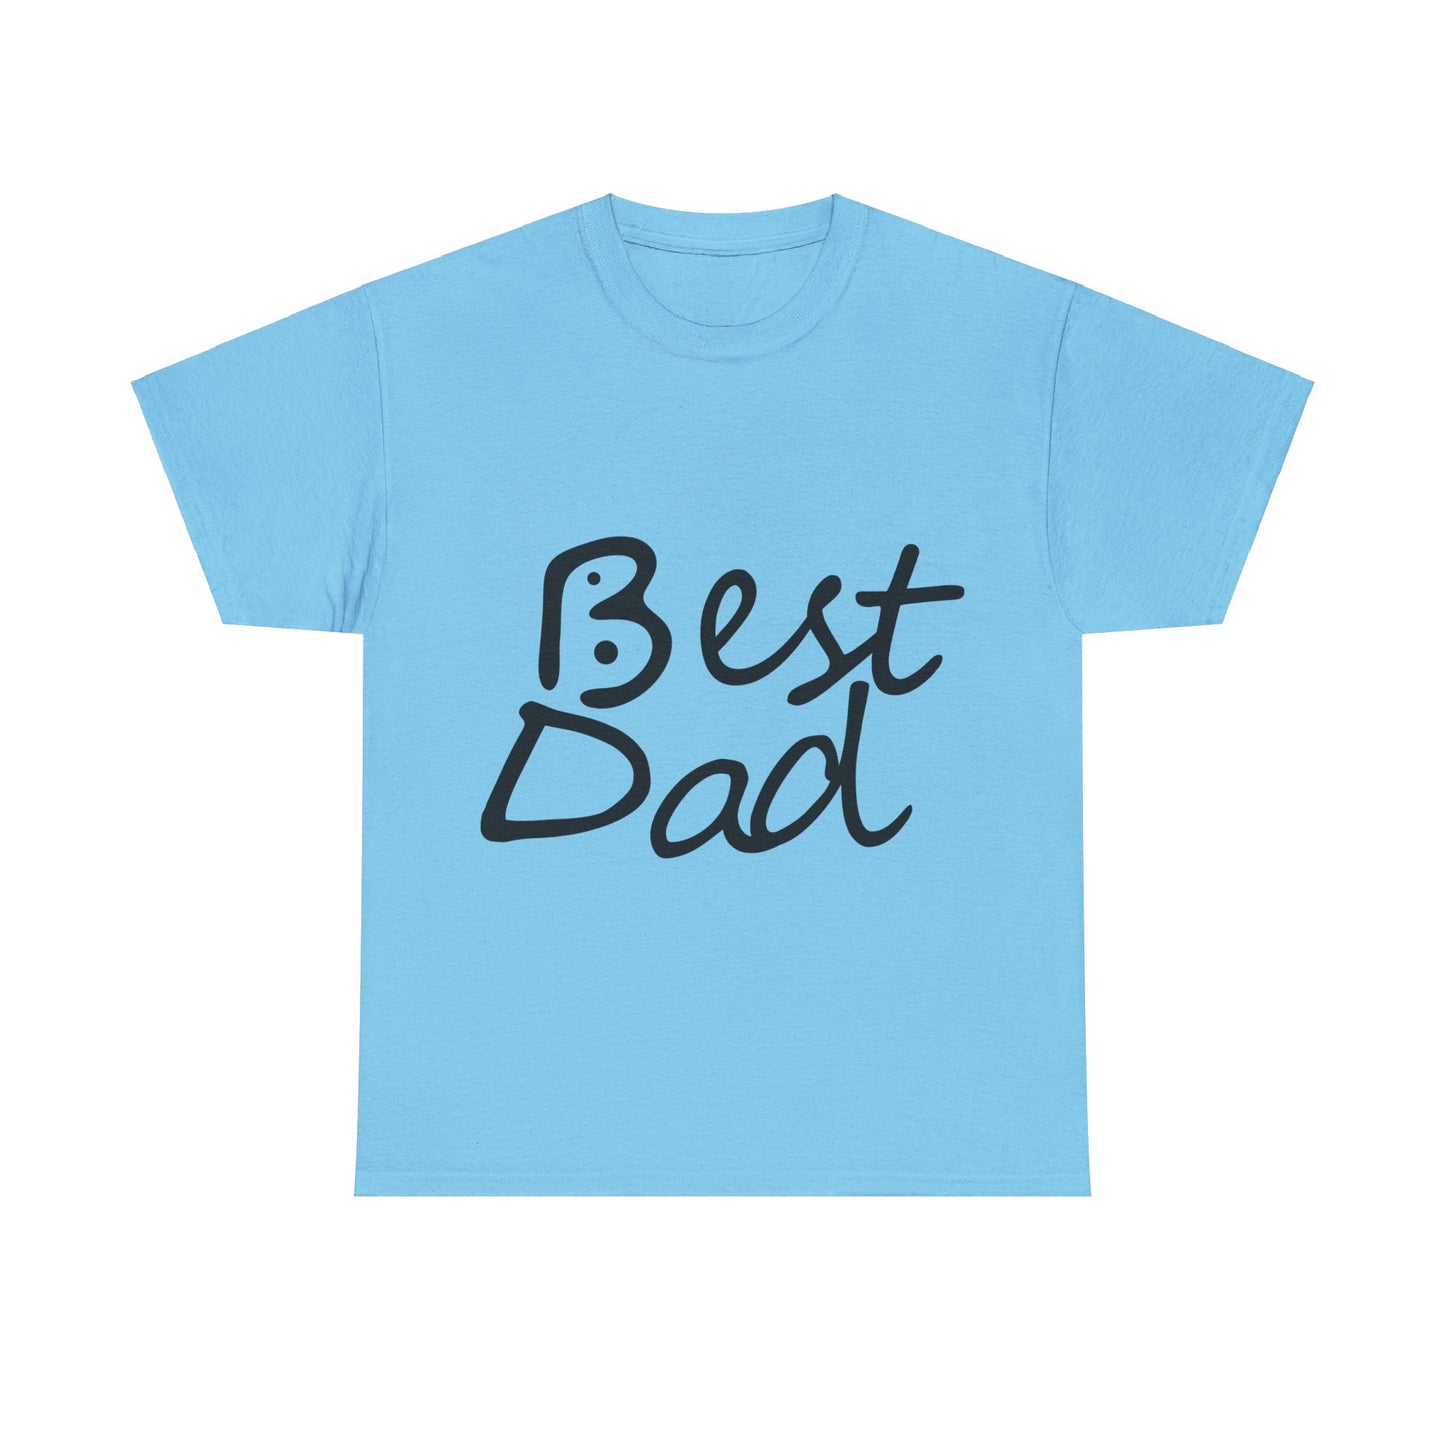 Best Dad, Bogan's Design